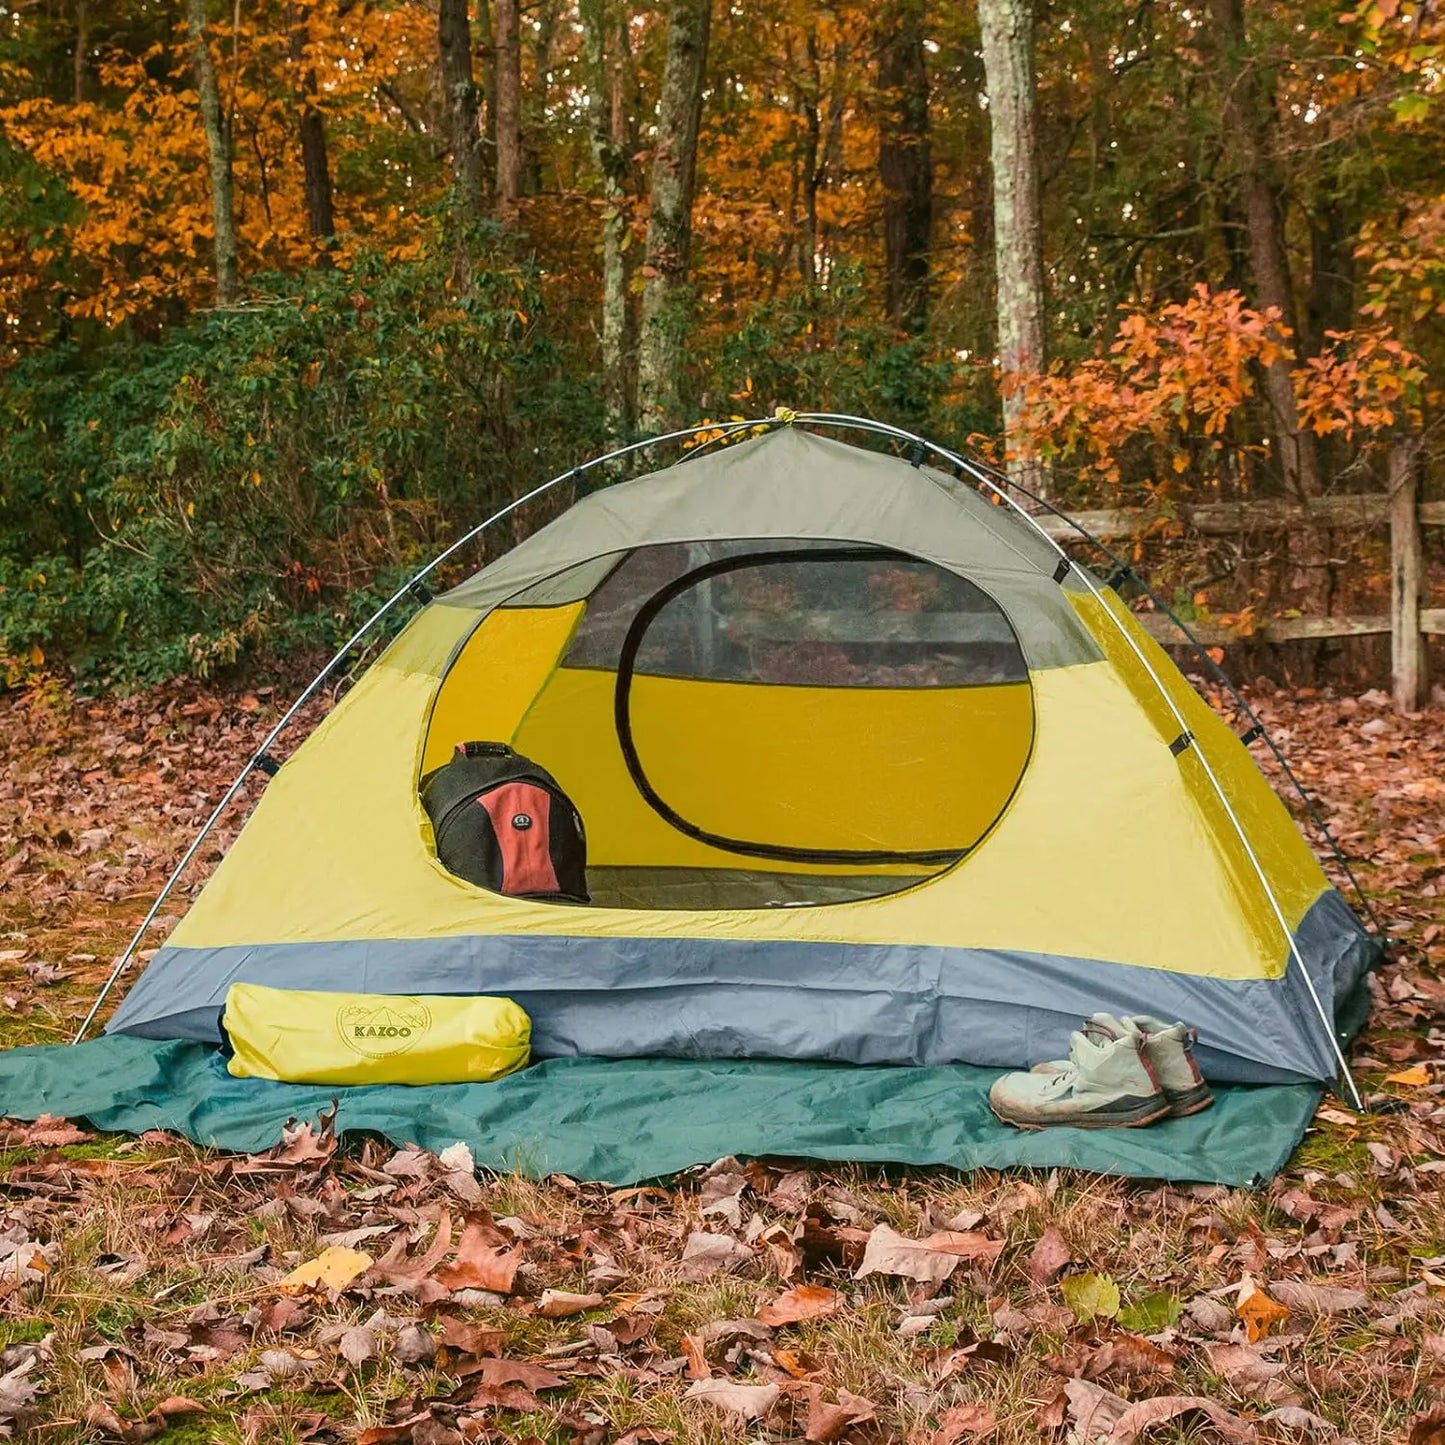 Waterproof Backpacking Tent